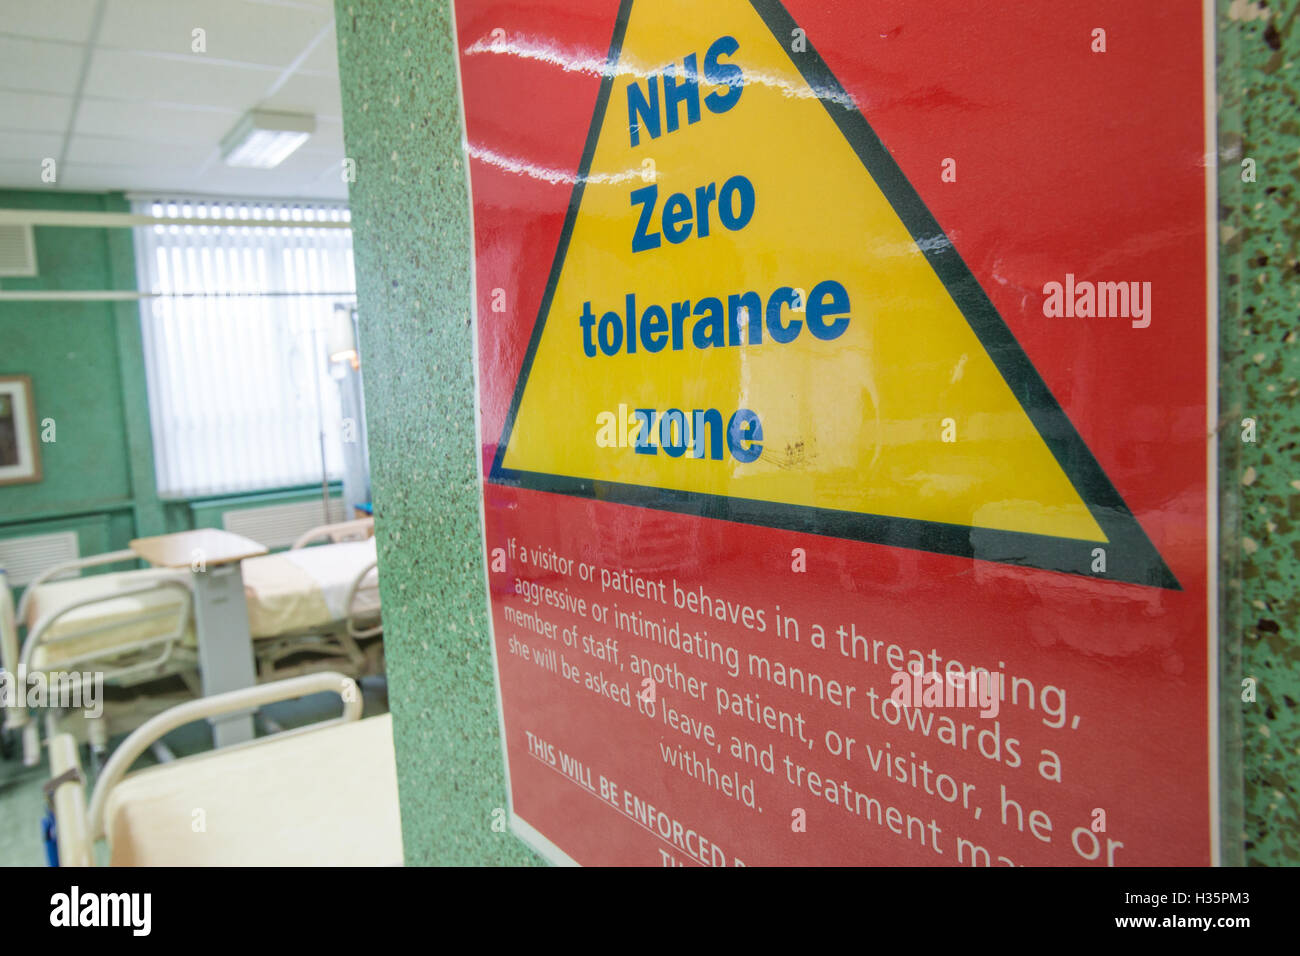 NHS zero tolerance sign Stock Photo